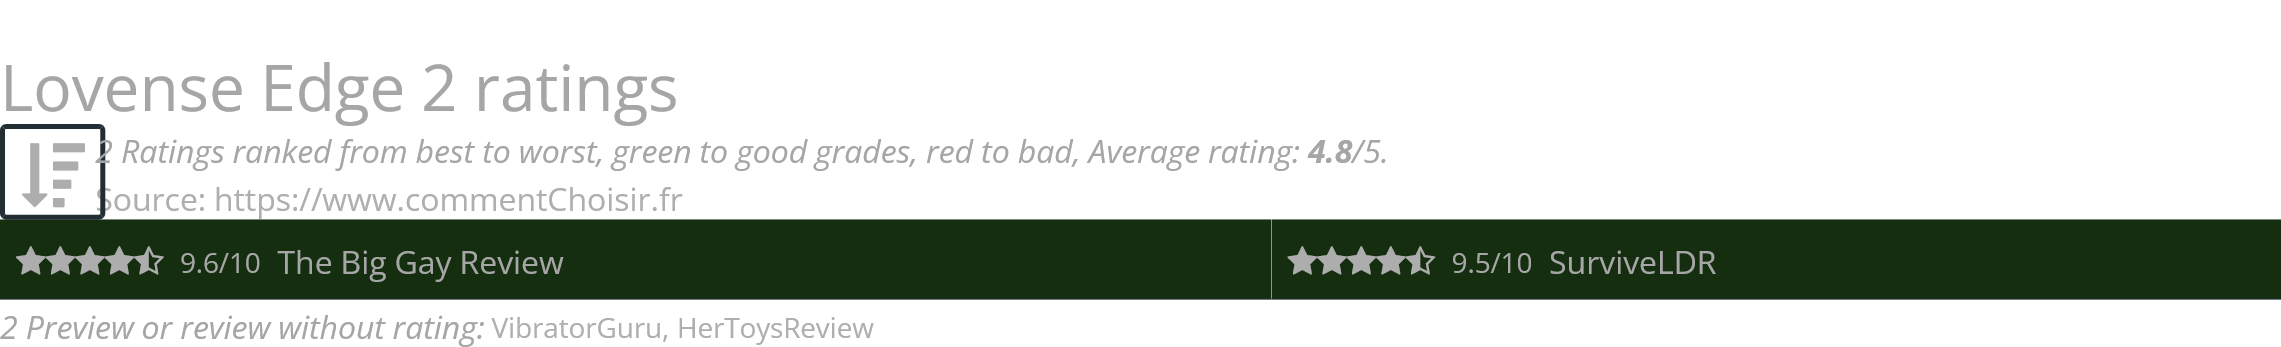 Ratings Lovense Edge 2